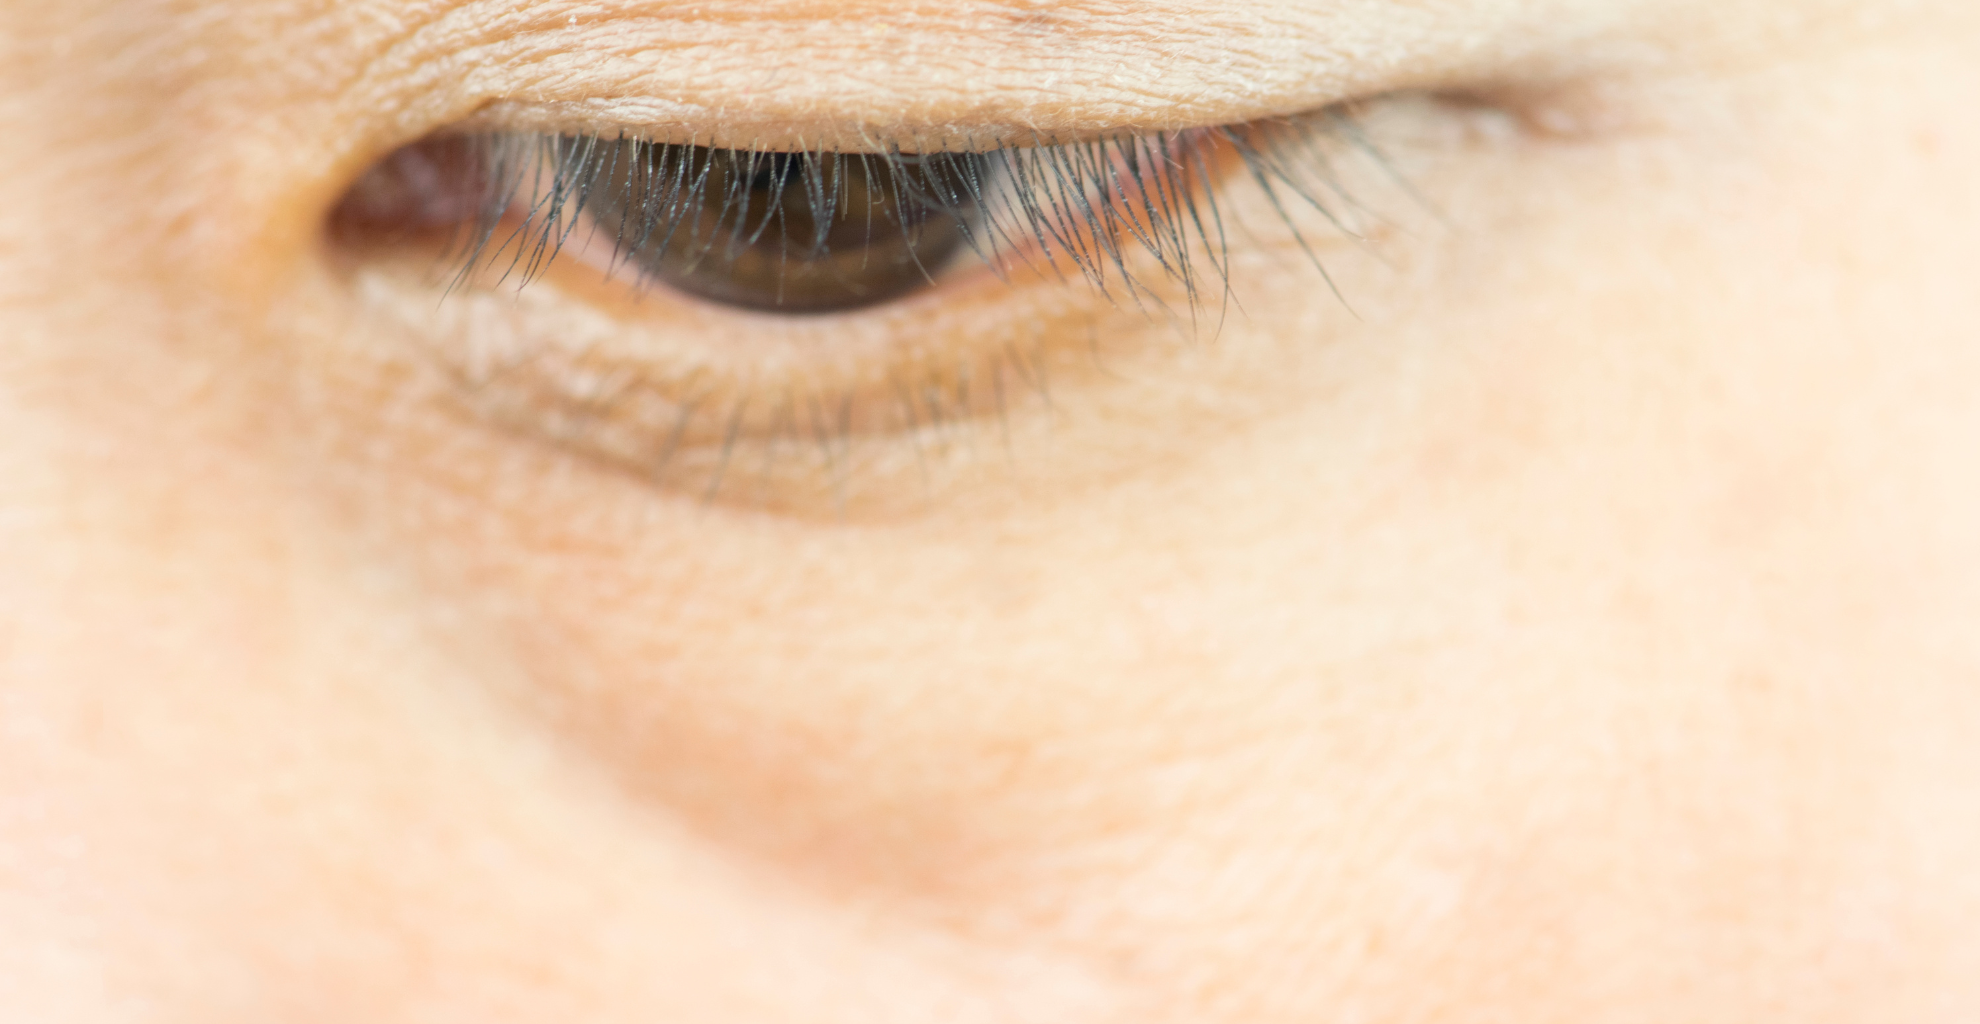 Augenringe sind ein nach außen sichtbares Zeichen oft schlechter Gesundheit.